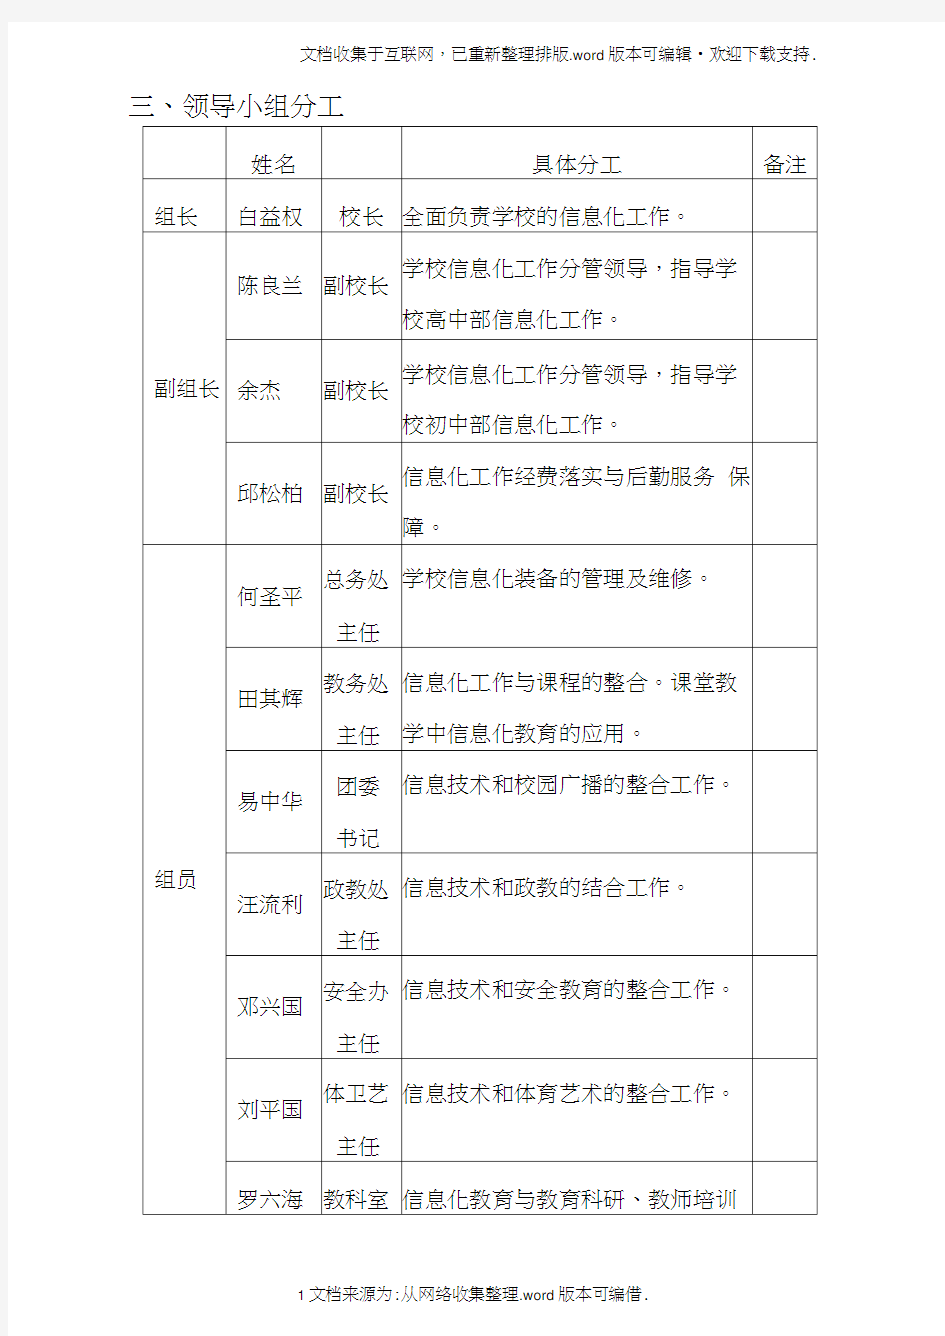 大竹县石河中学信息化领导小组职责及分工